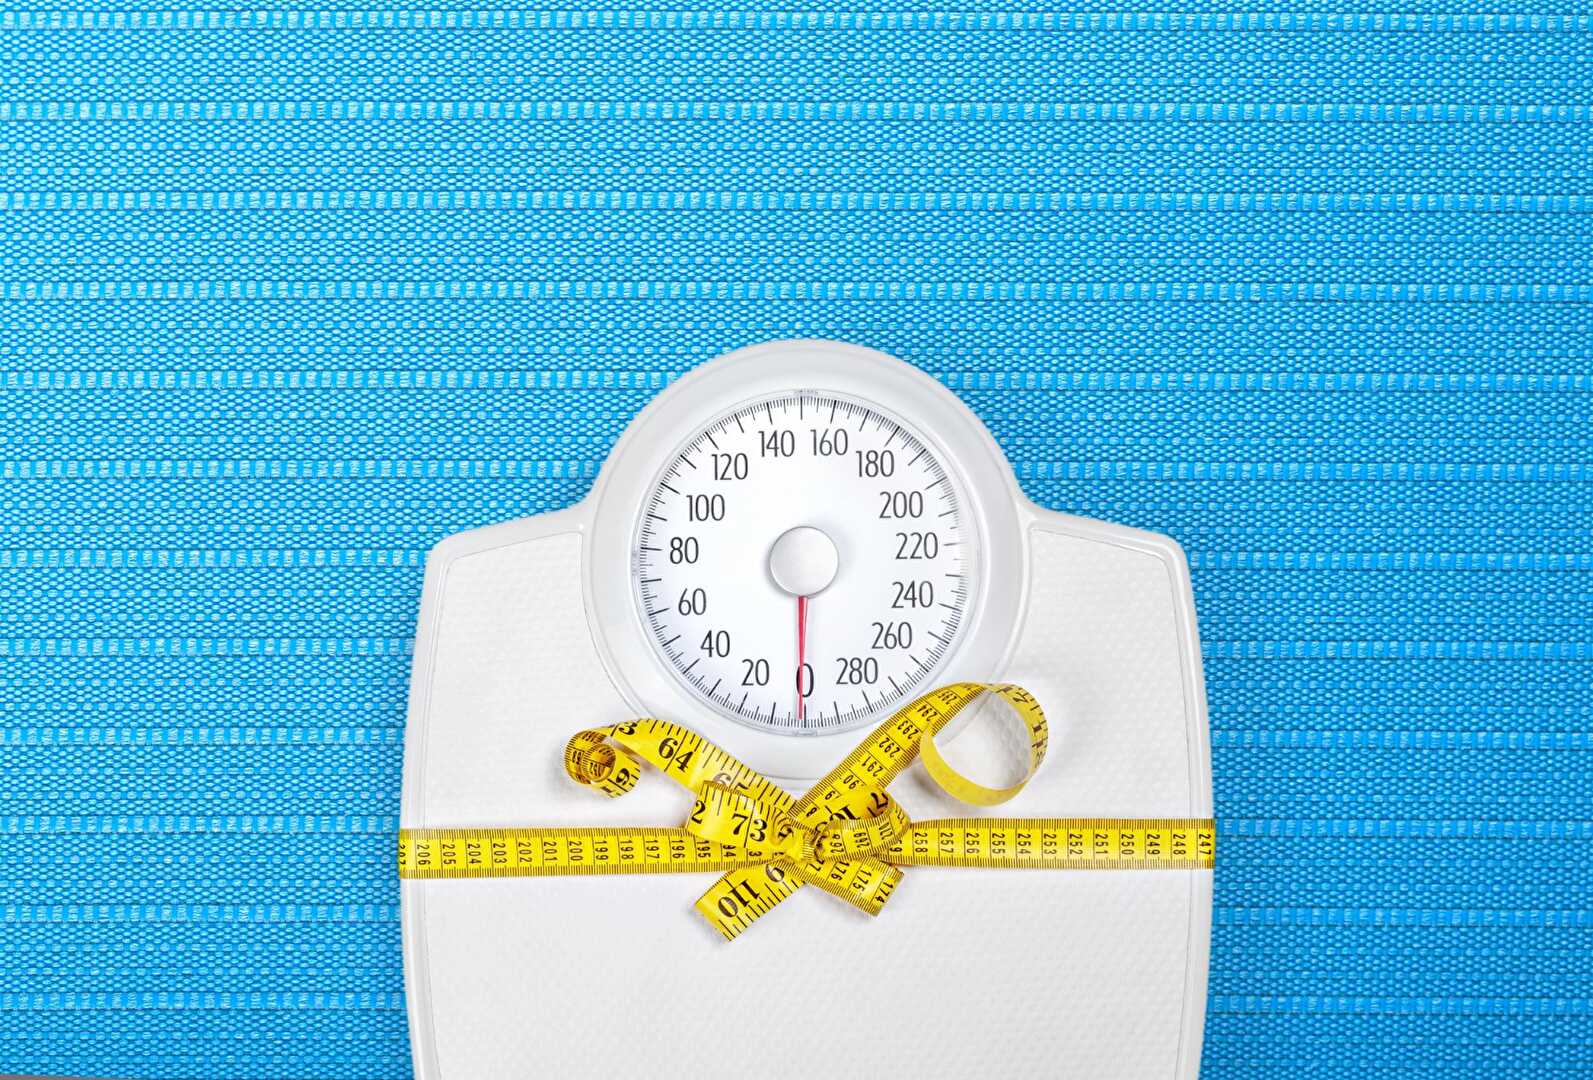 Faites connaissance avec le régime WeightWatchers pour 10 € par mois sur 12 mois !